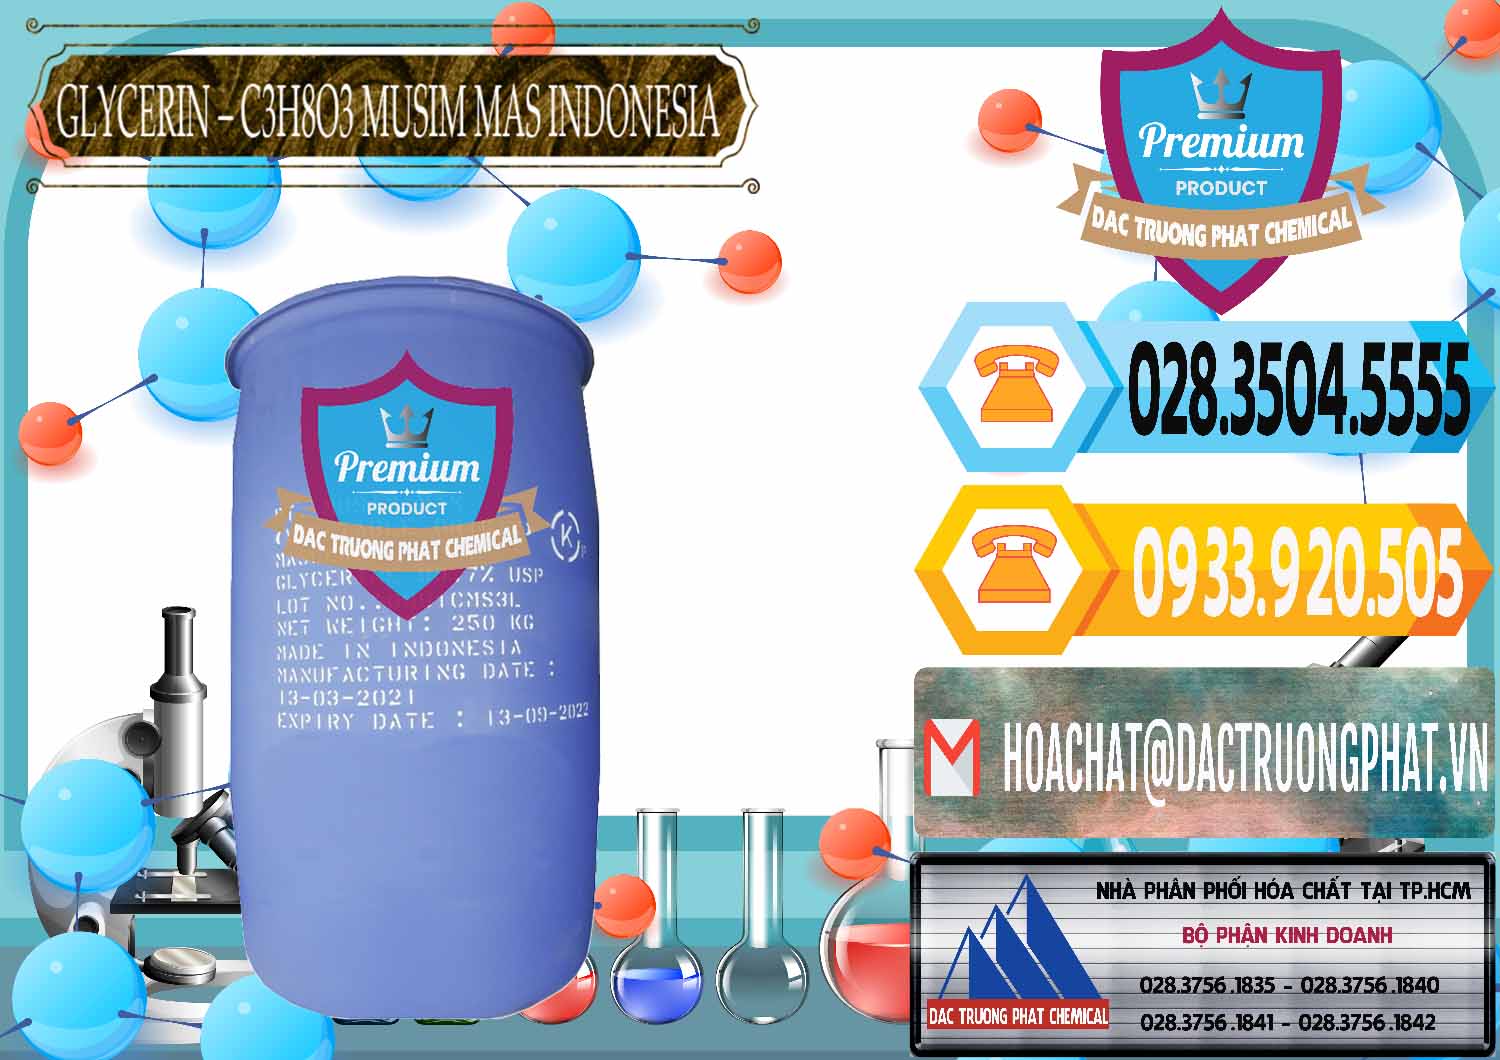 Đơn vị bán & phân phối Glycerin – C3H8O3 99.7% Musim Mas Indonesia - 0272 - Cty cung cấp _ nhập khẩu hóa chất tại TP.HCM - hoachattayrua.net